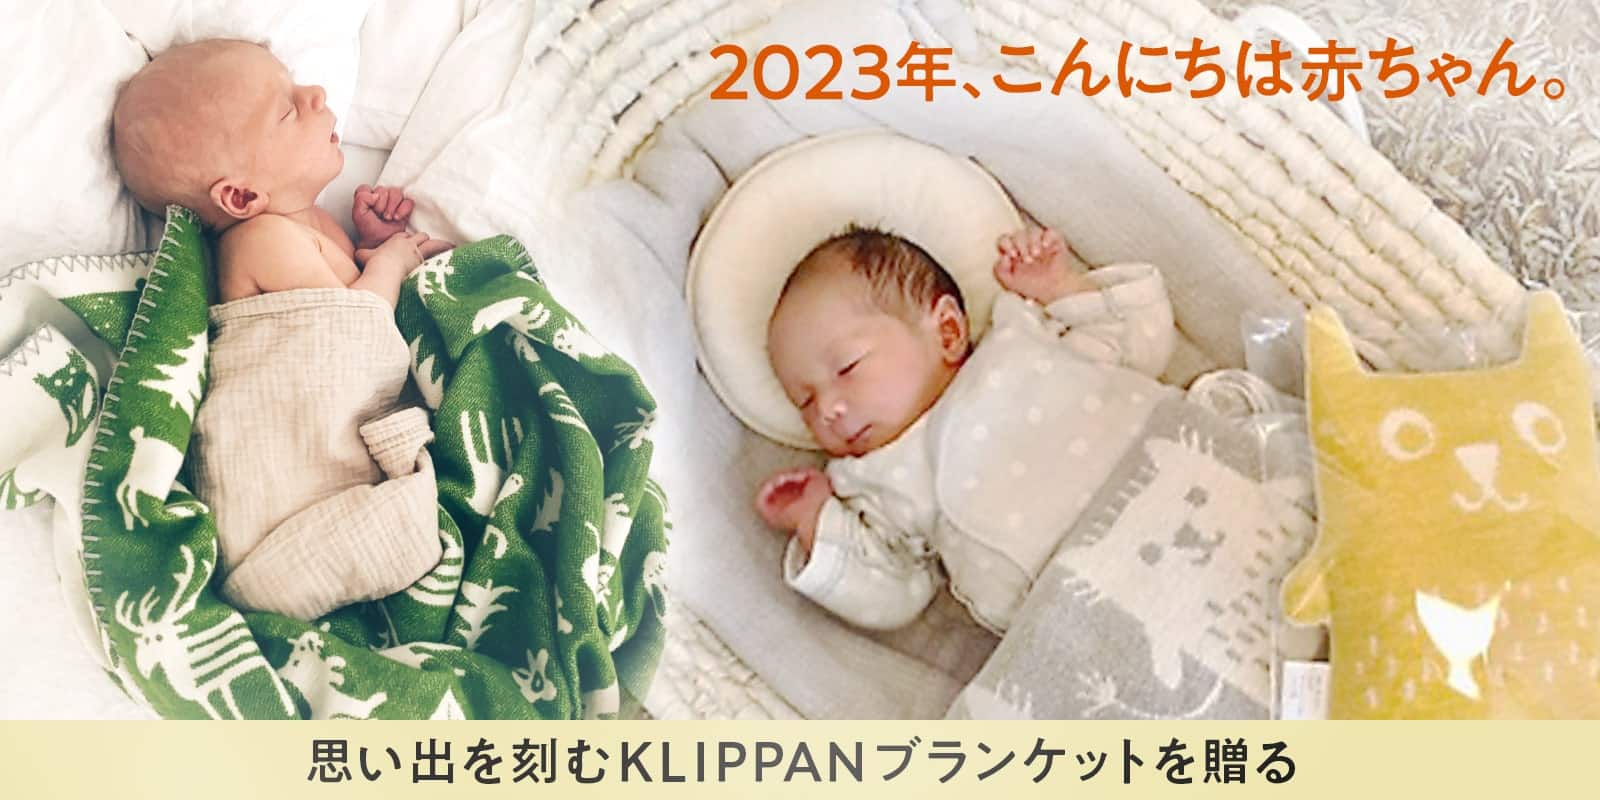 2023年、こんにちは赤ちゃん | 思い出を刻むKLIPPANブランケットを贈る